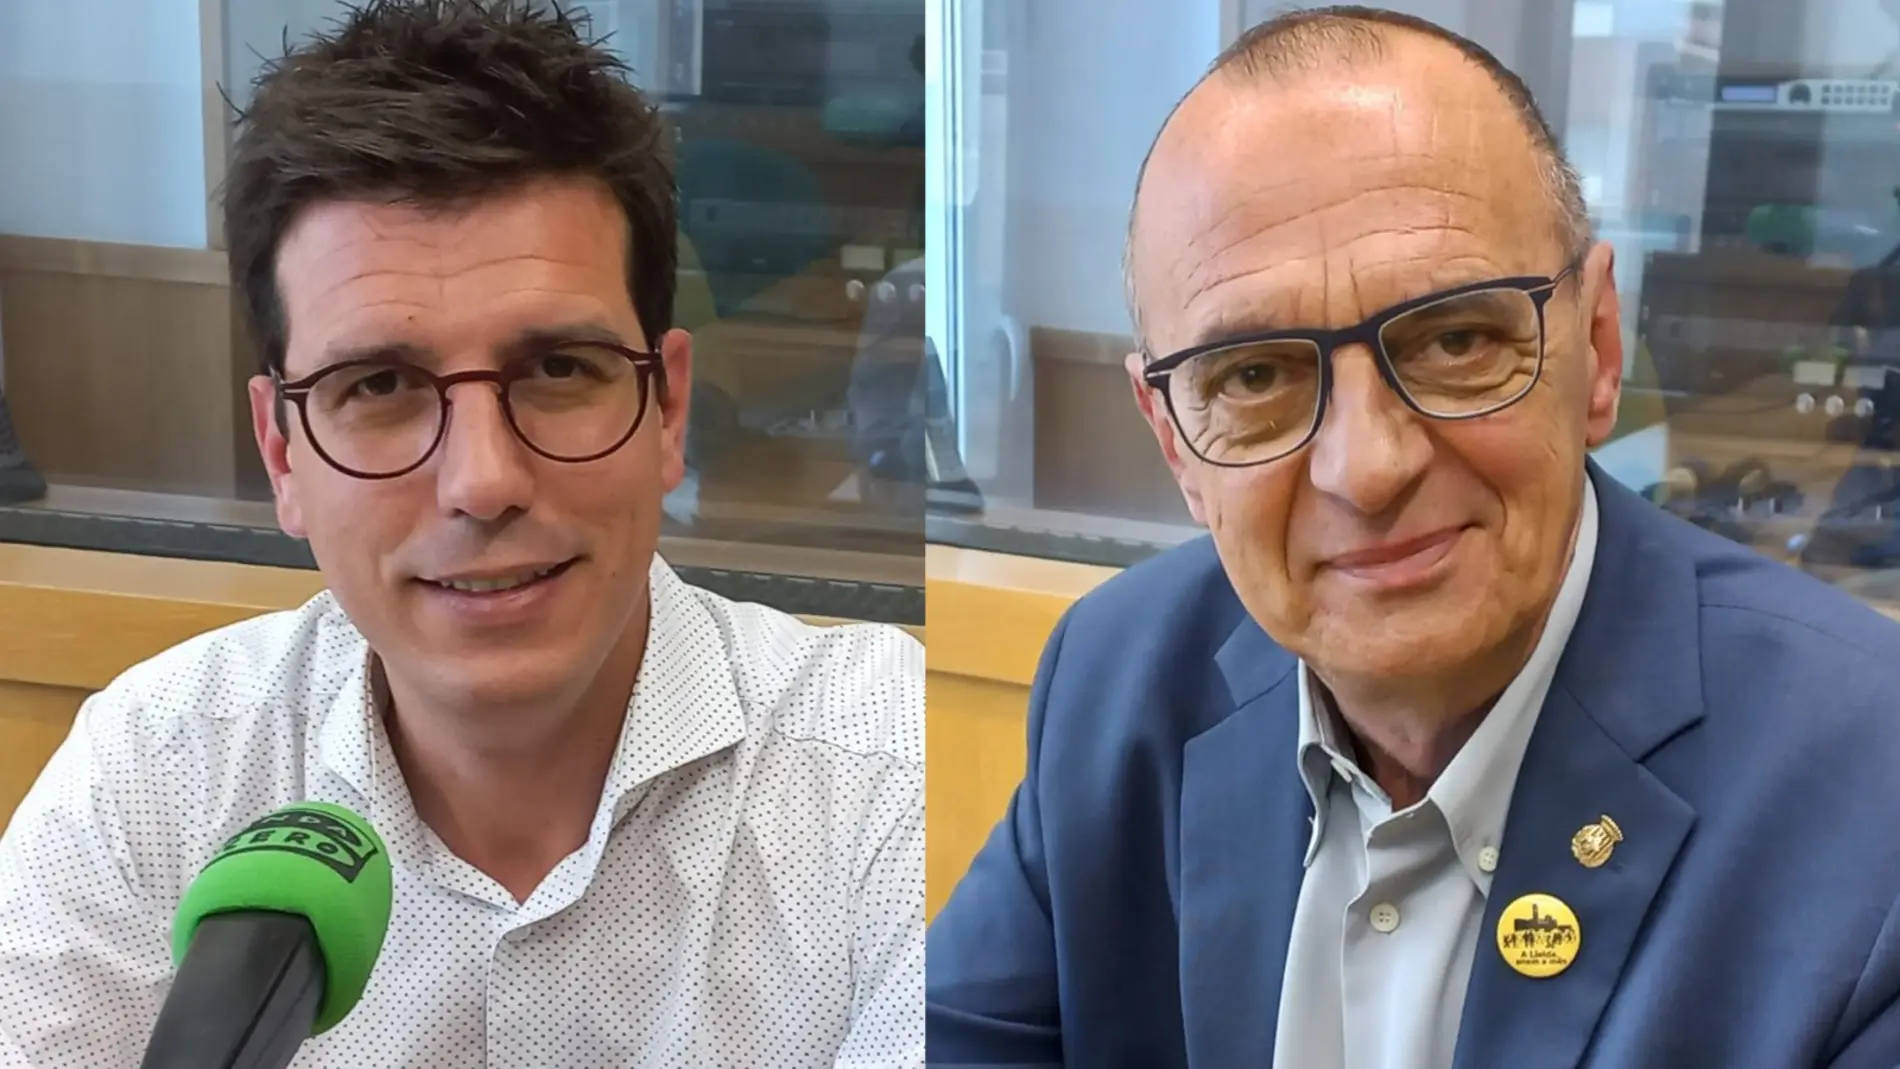 Miquel Pueyo i Toni Postius abandonen la Paeria per la desfeta electoral a Lleida